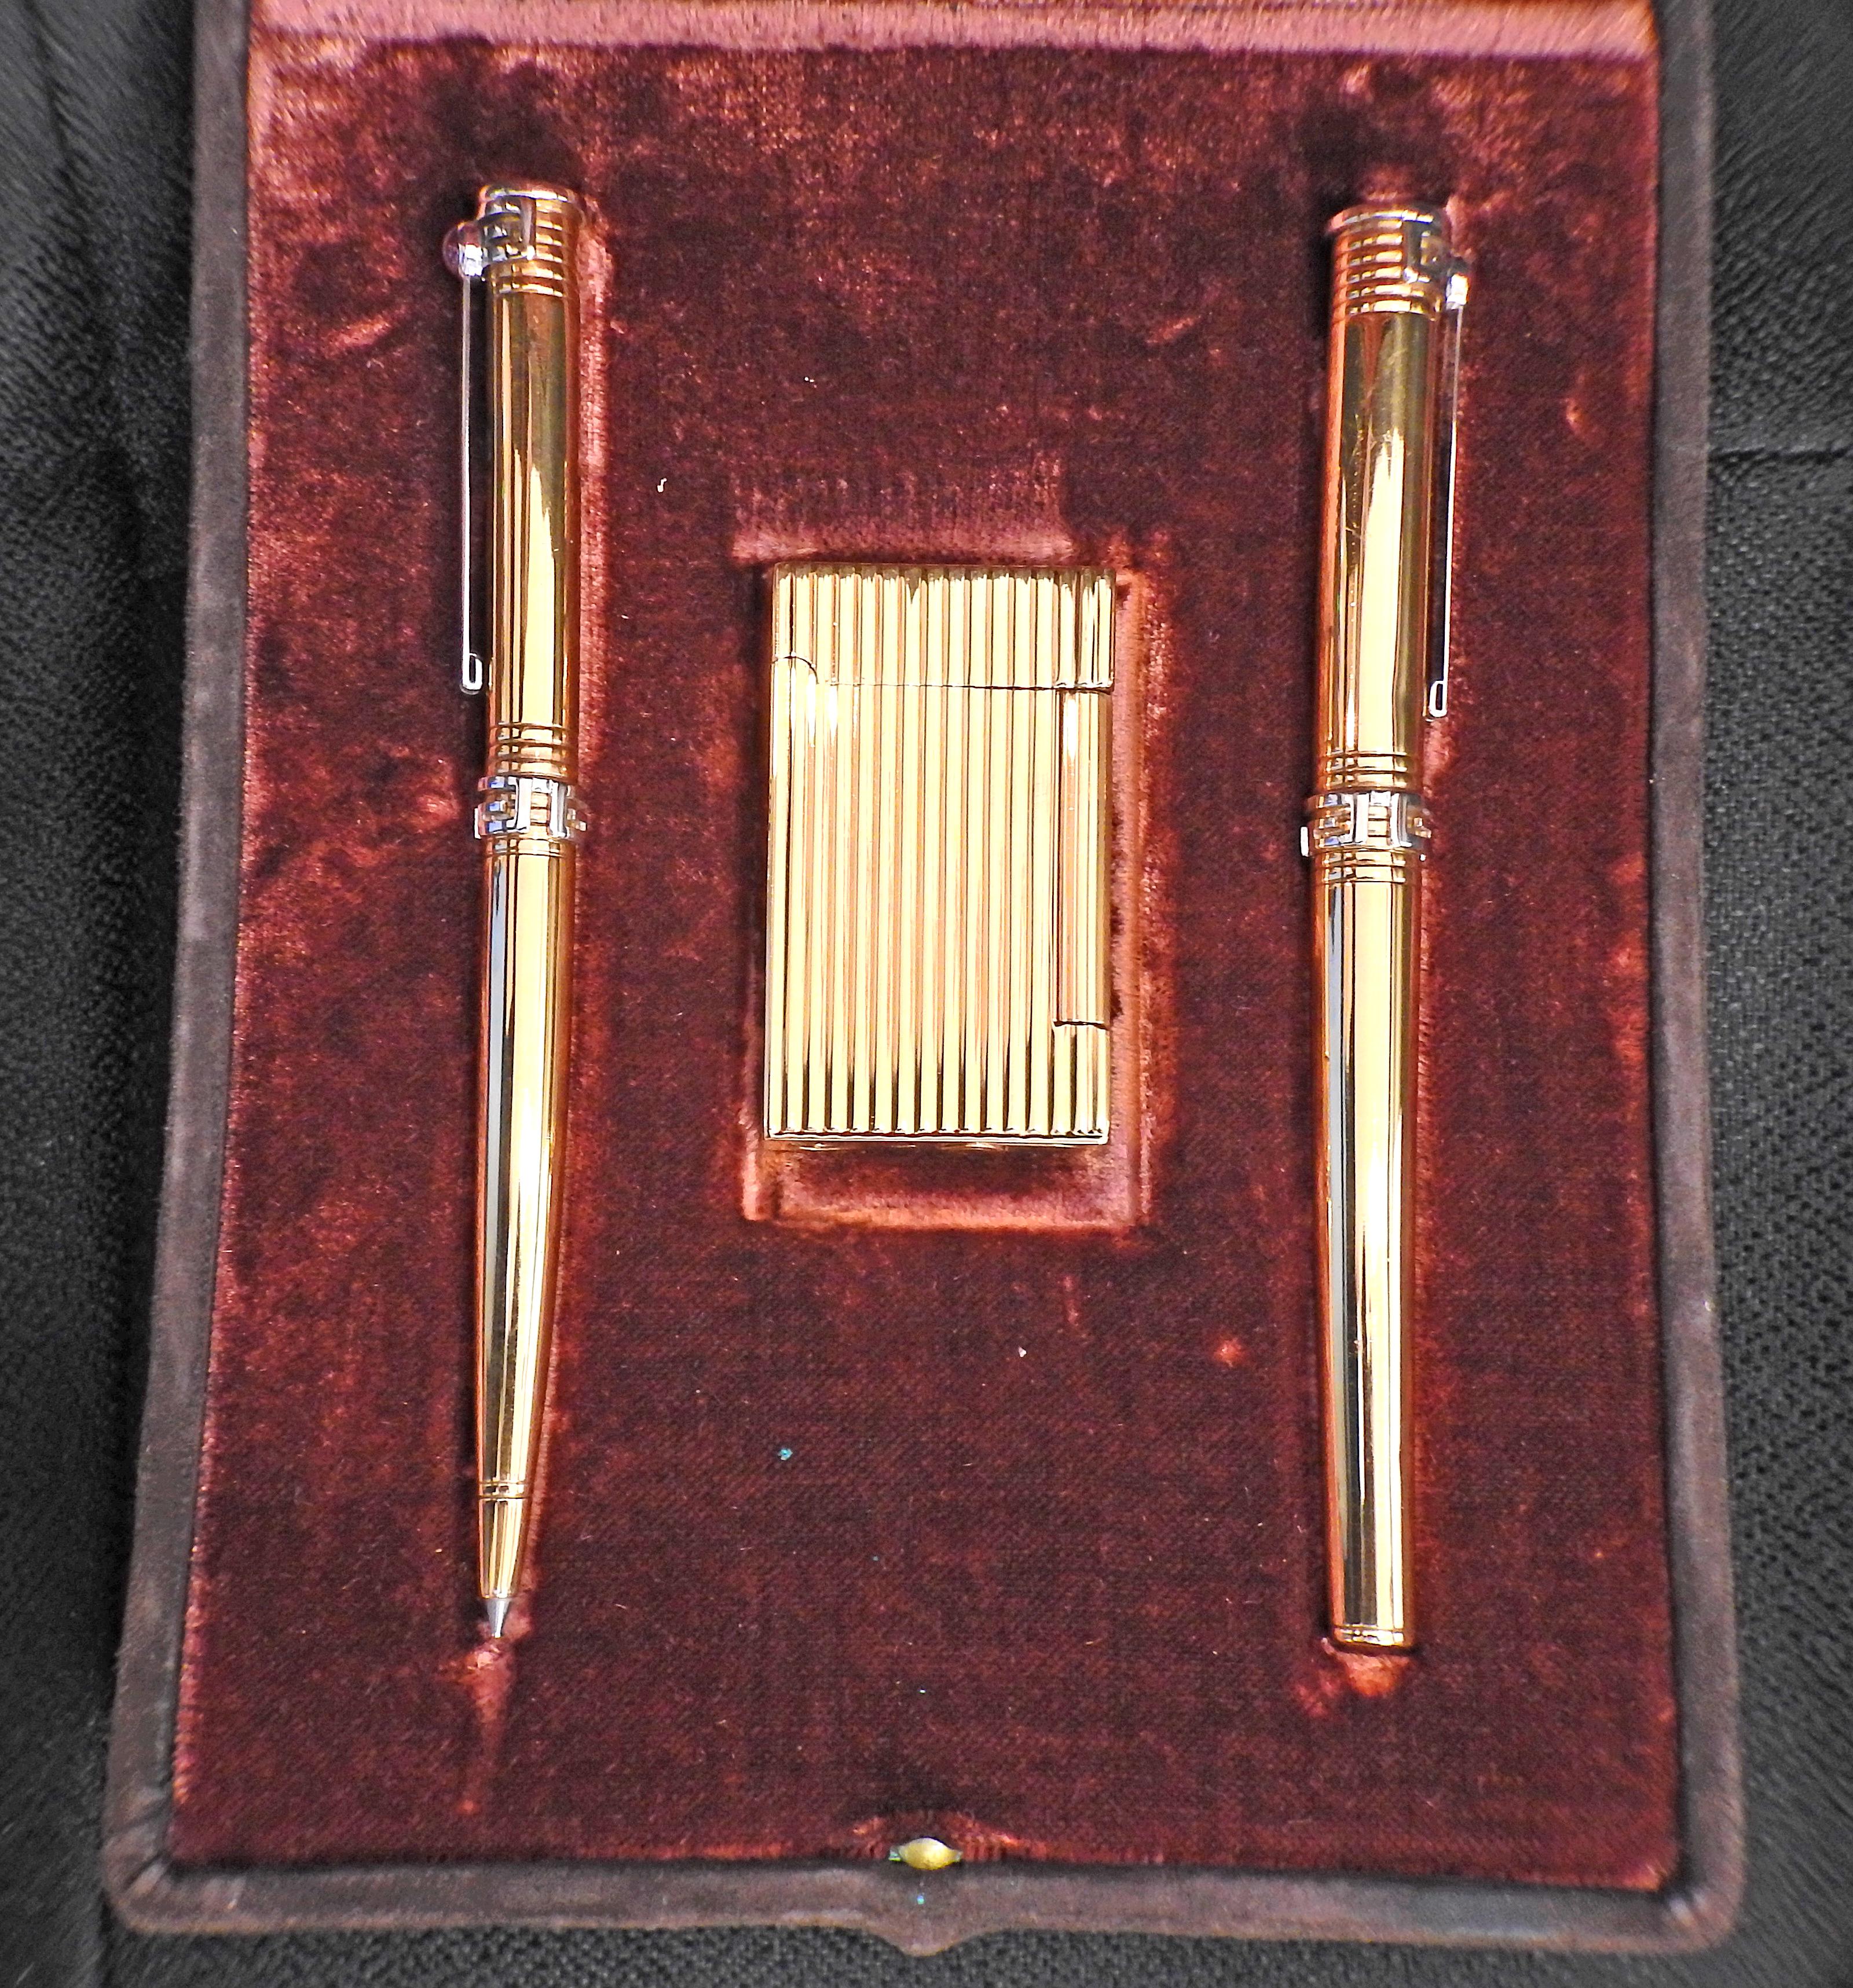 18k Gold zwei Schreibgeräte (ein Rollerball und ein Füllfederhalter) und ein Feuerzeug von Parker, in Originalverpackung. Die Stifte sind jeweils 130 mm lang, das Feuerzeug misst 55 mm x 32 mm x 9 mm. Stifte mit Cabochon-Rubin auf der Kappe